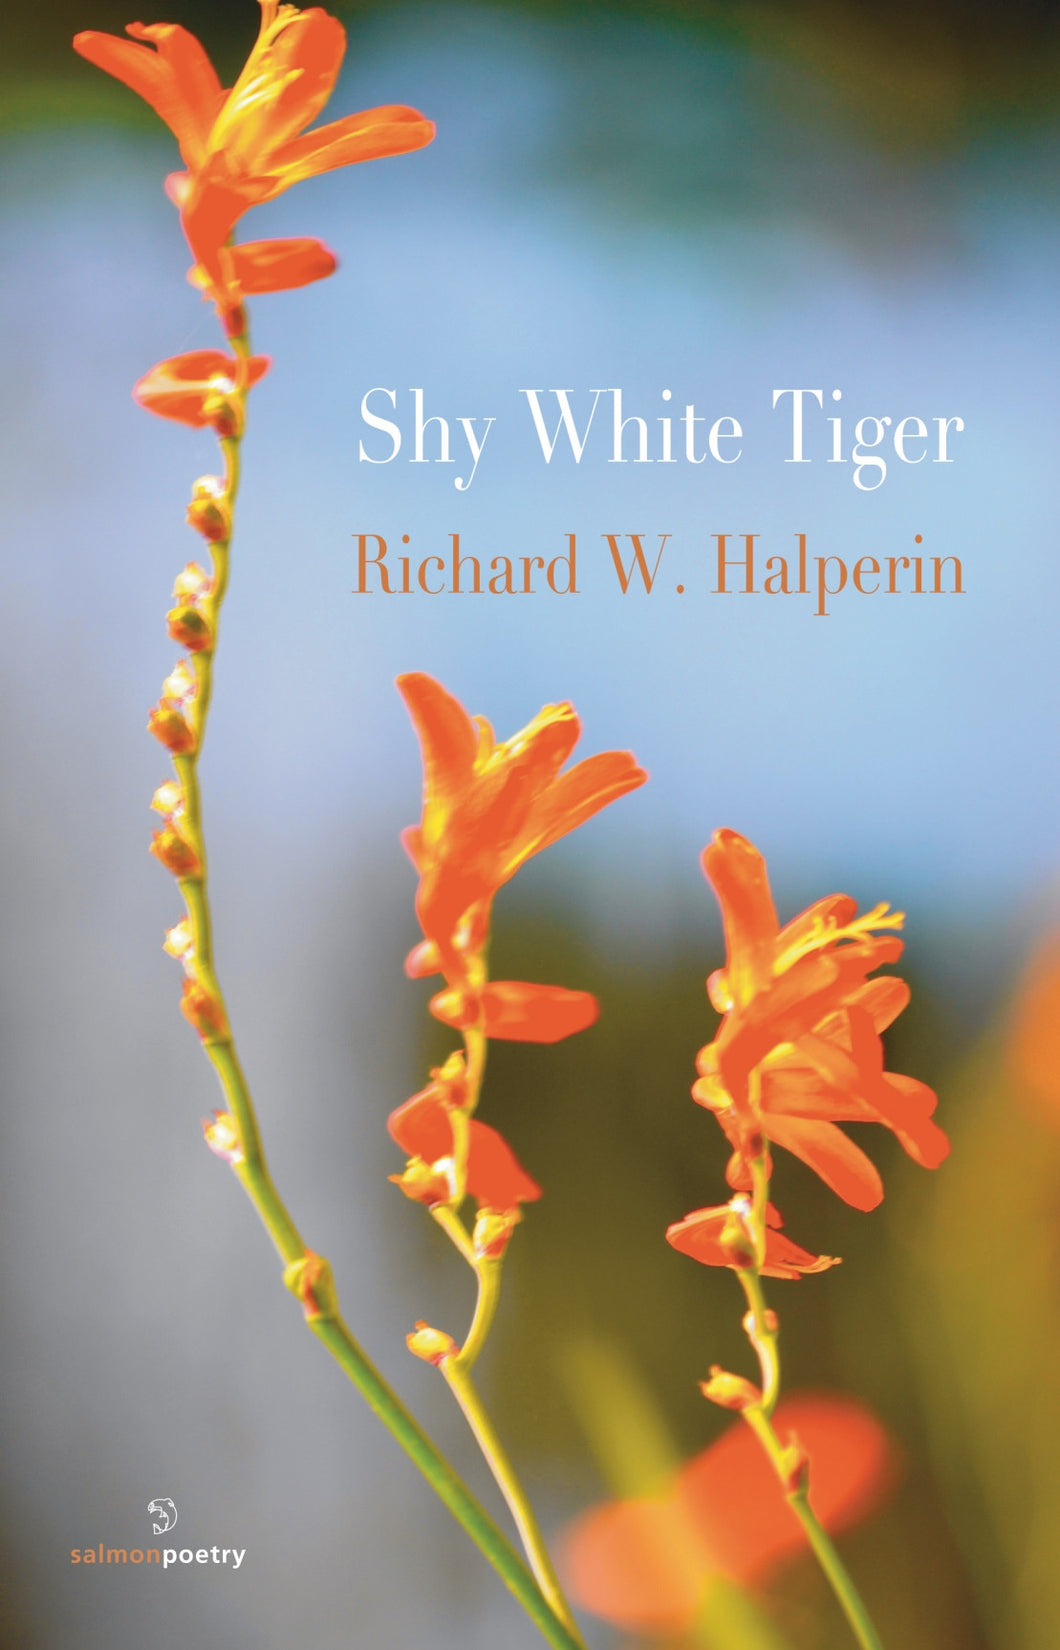 Shy White Tiger